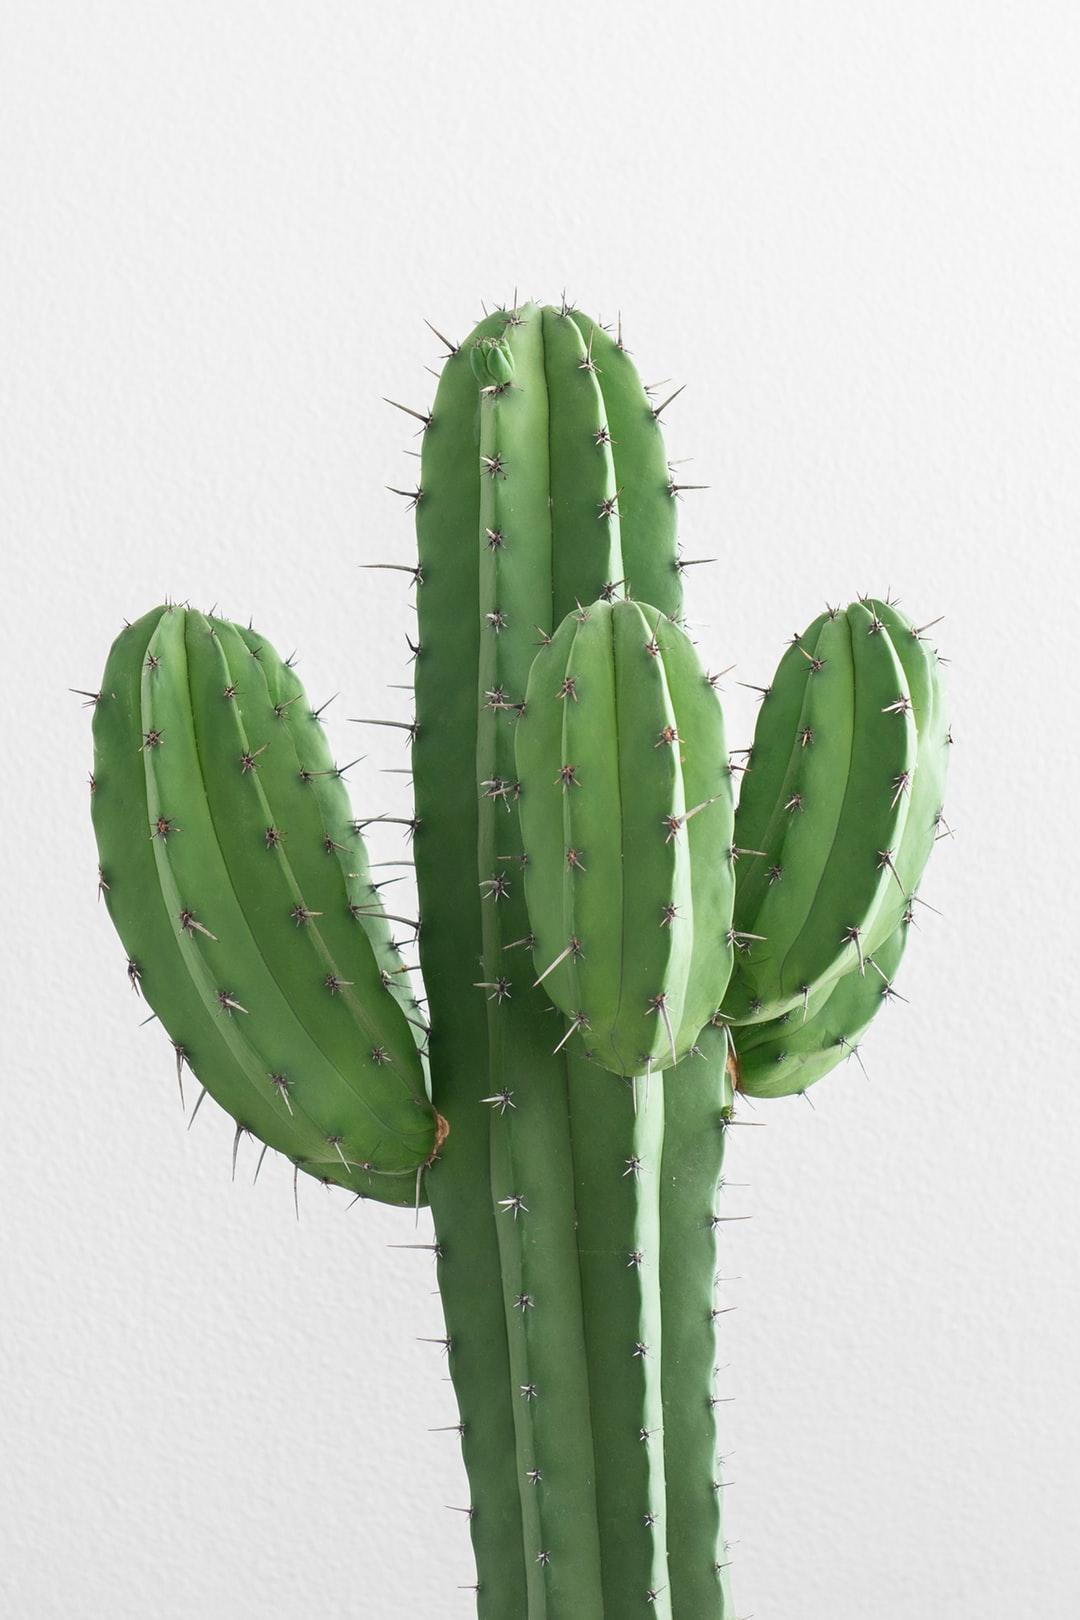 Best Free Cactus Picture